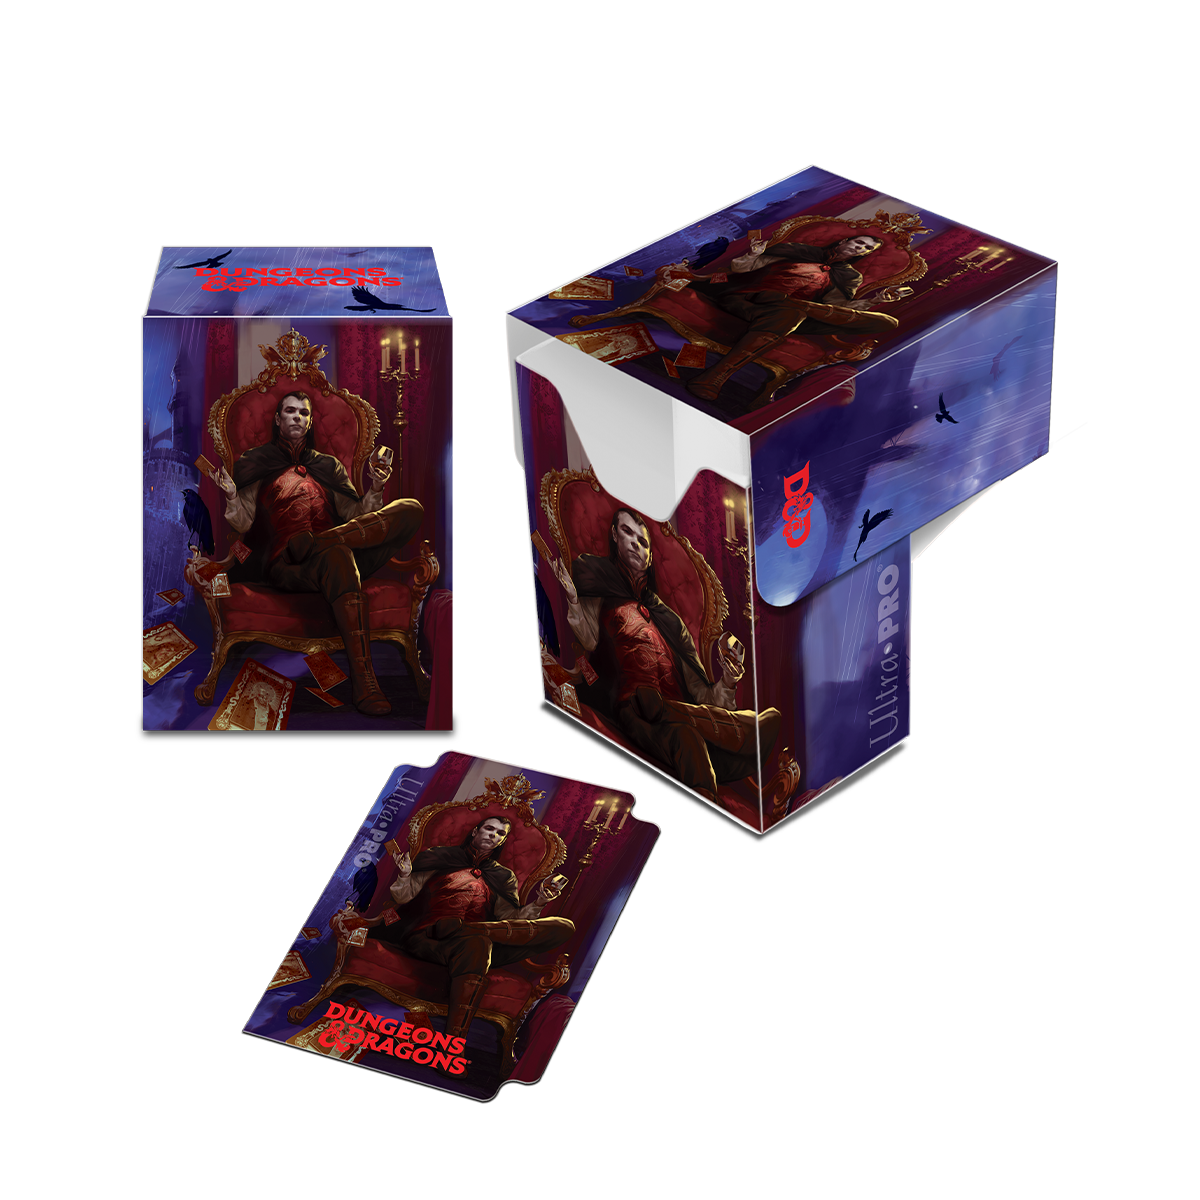 Dungeons & Dragons Count Strahd von Zarovich Full-View Deck Box | Ultra ...